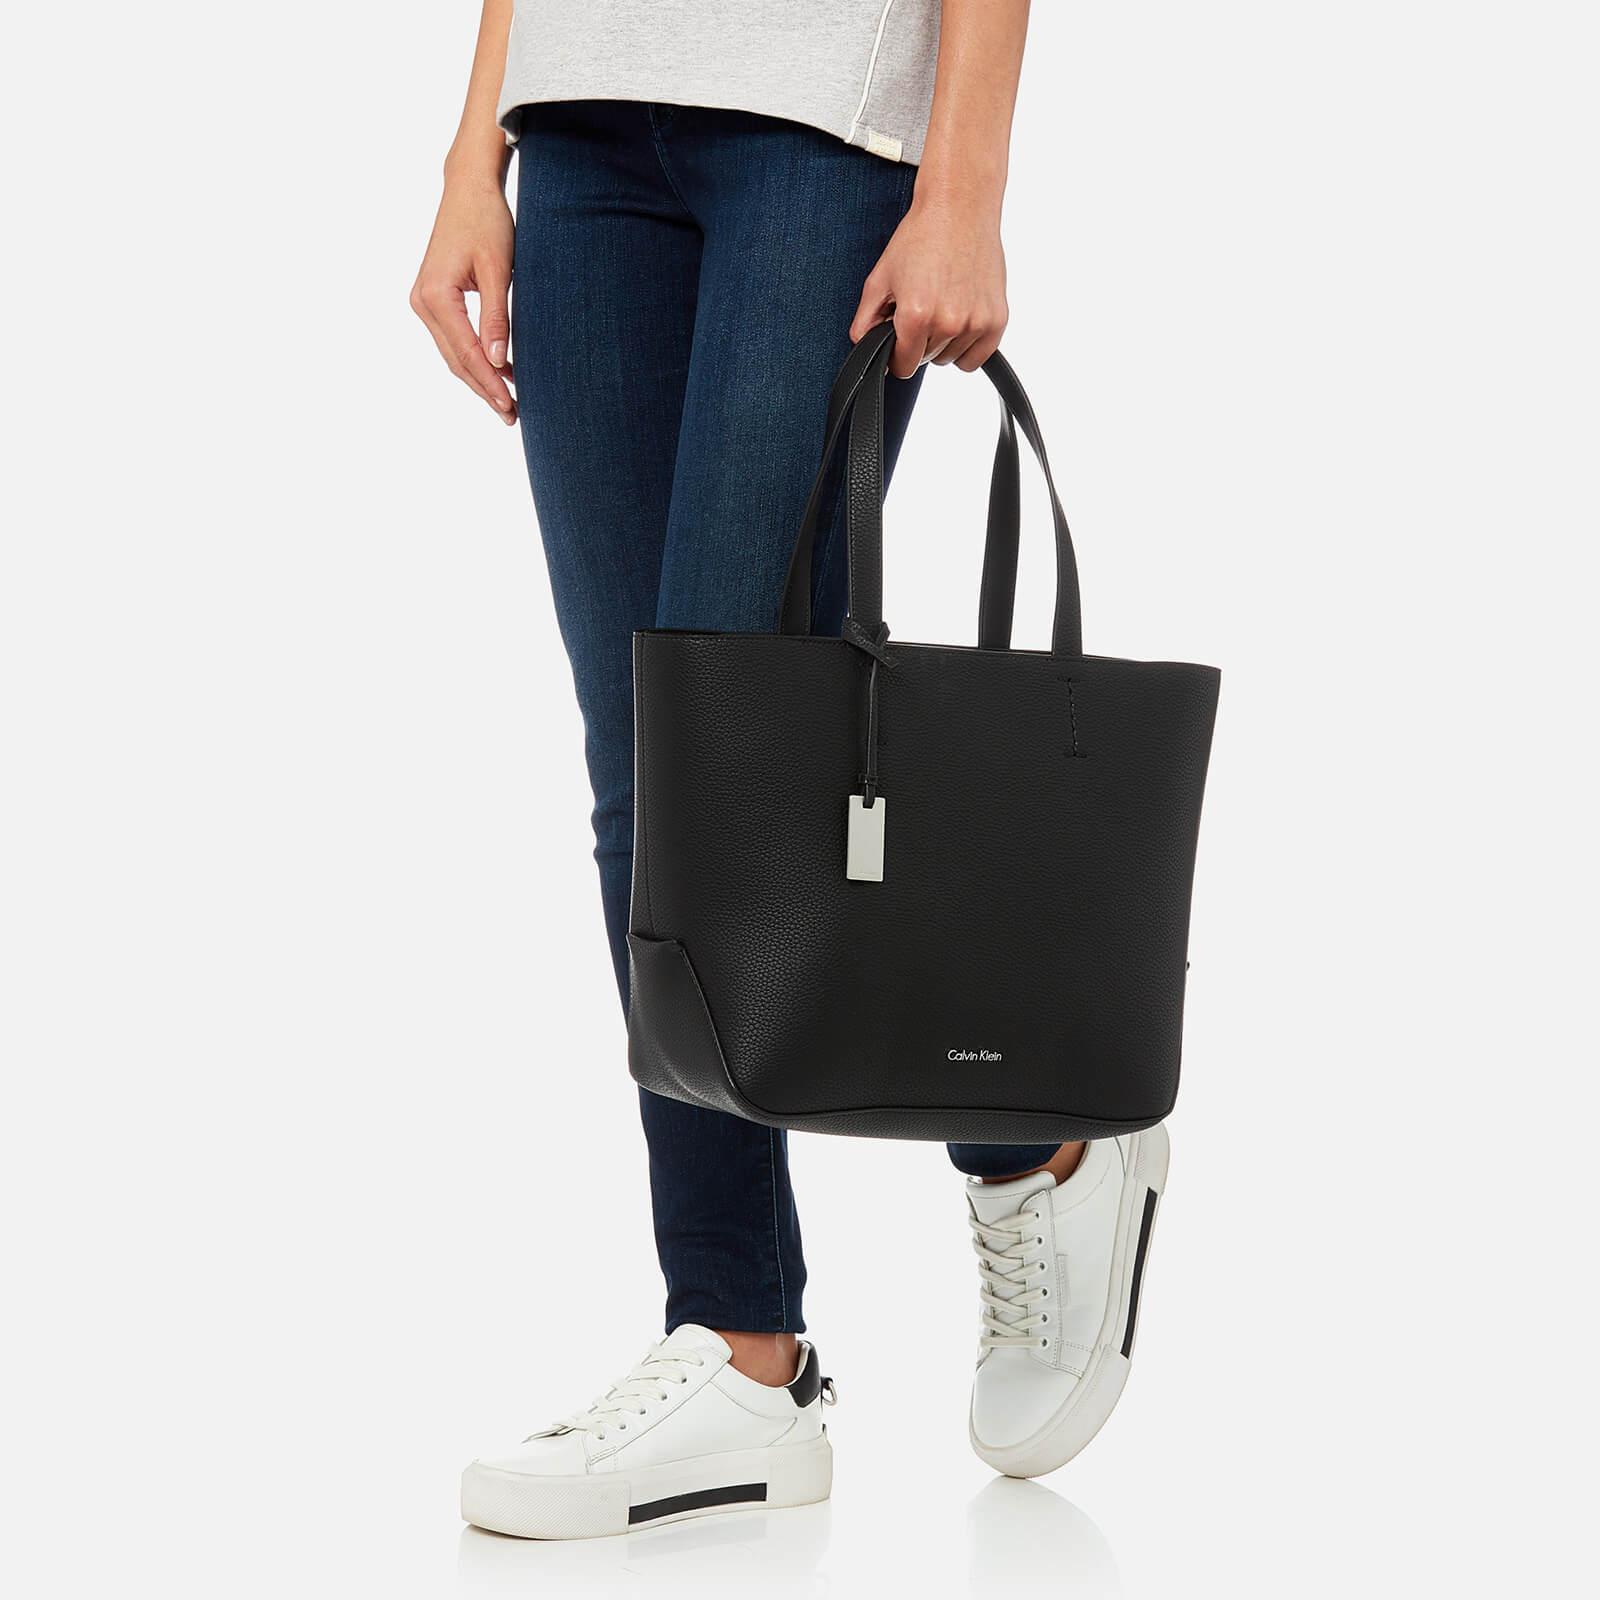 CALVIN KLEIN 205W39NYC Edit Medium Shopper Bag in Black - Lyst